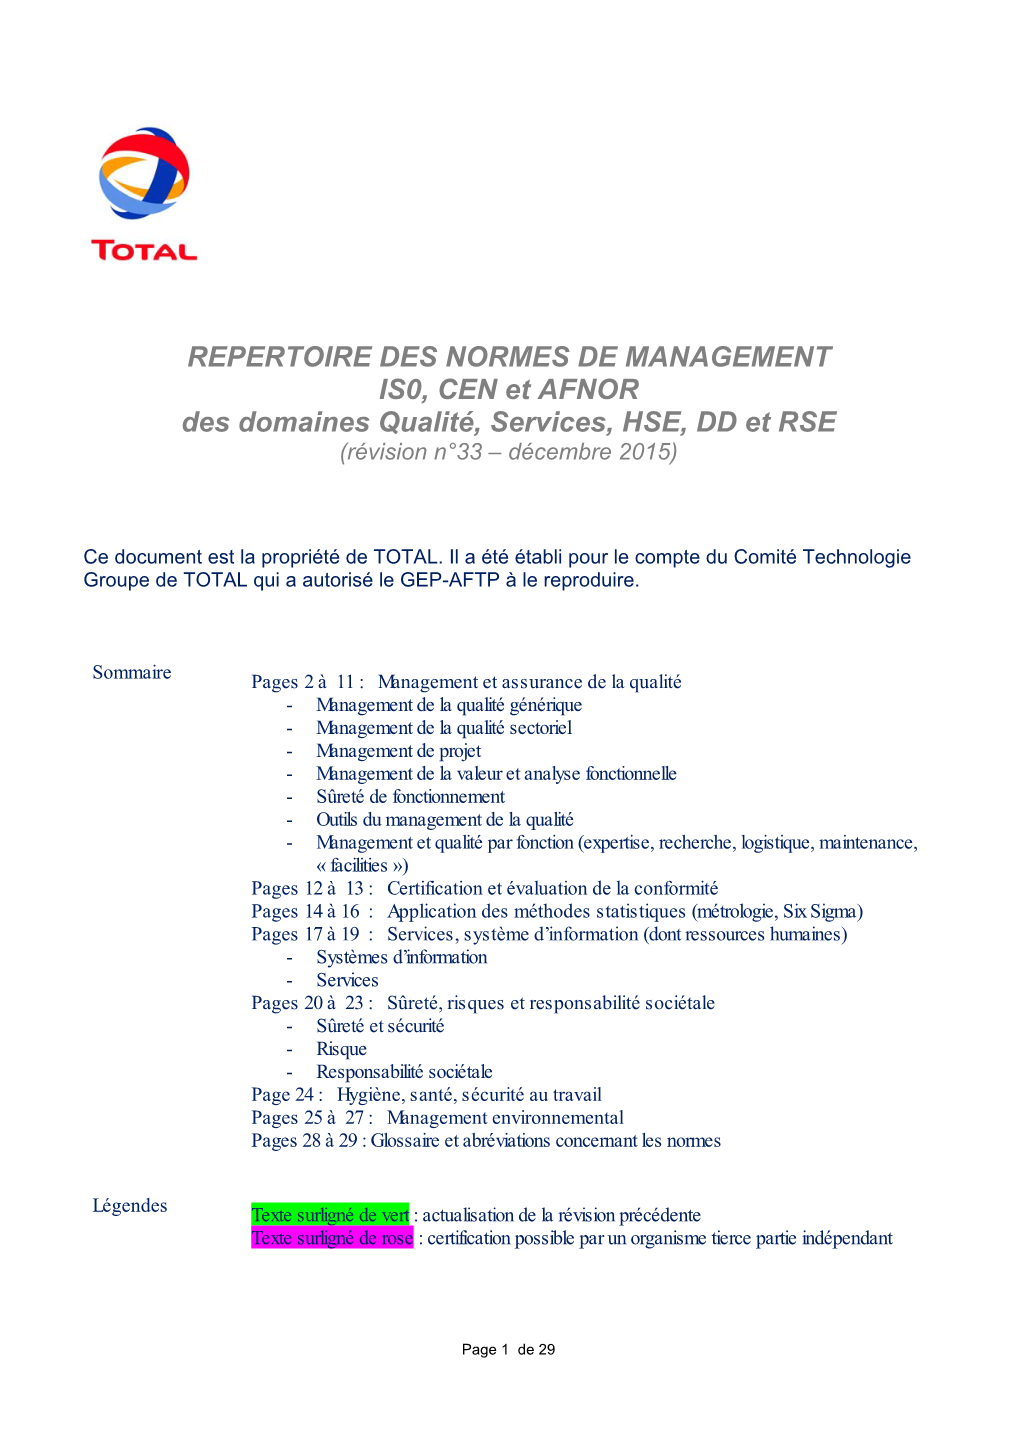 REPERTOIRE DES NORMES DE MANAGEMENT IS0, CEN Et AFNOR Des Domaines Qualité, Services, HSE, DD Et RSE (Révision N°33 – Décembre 2015)